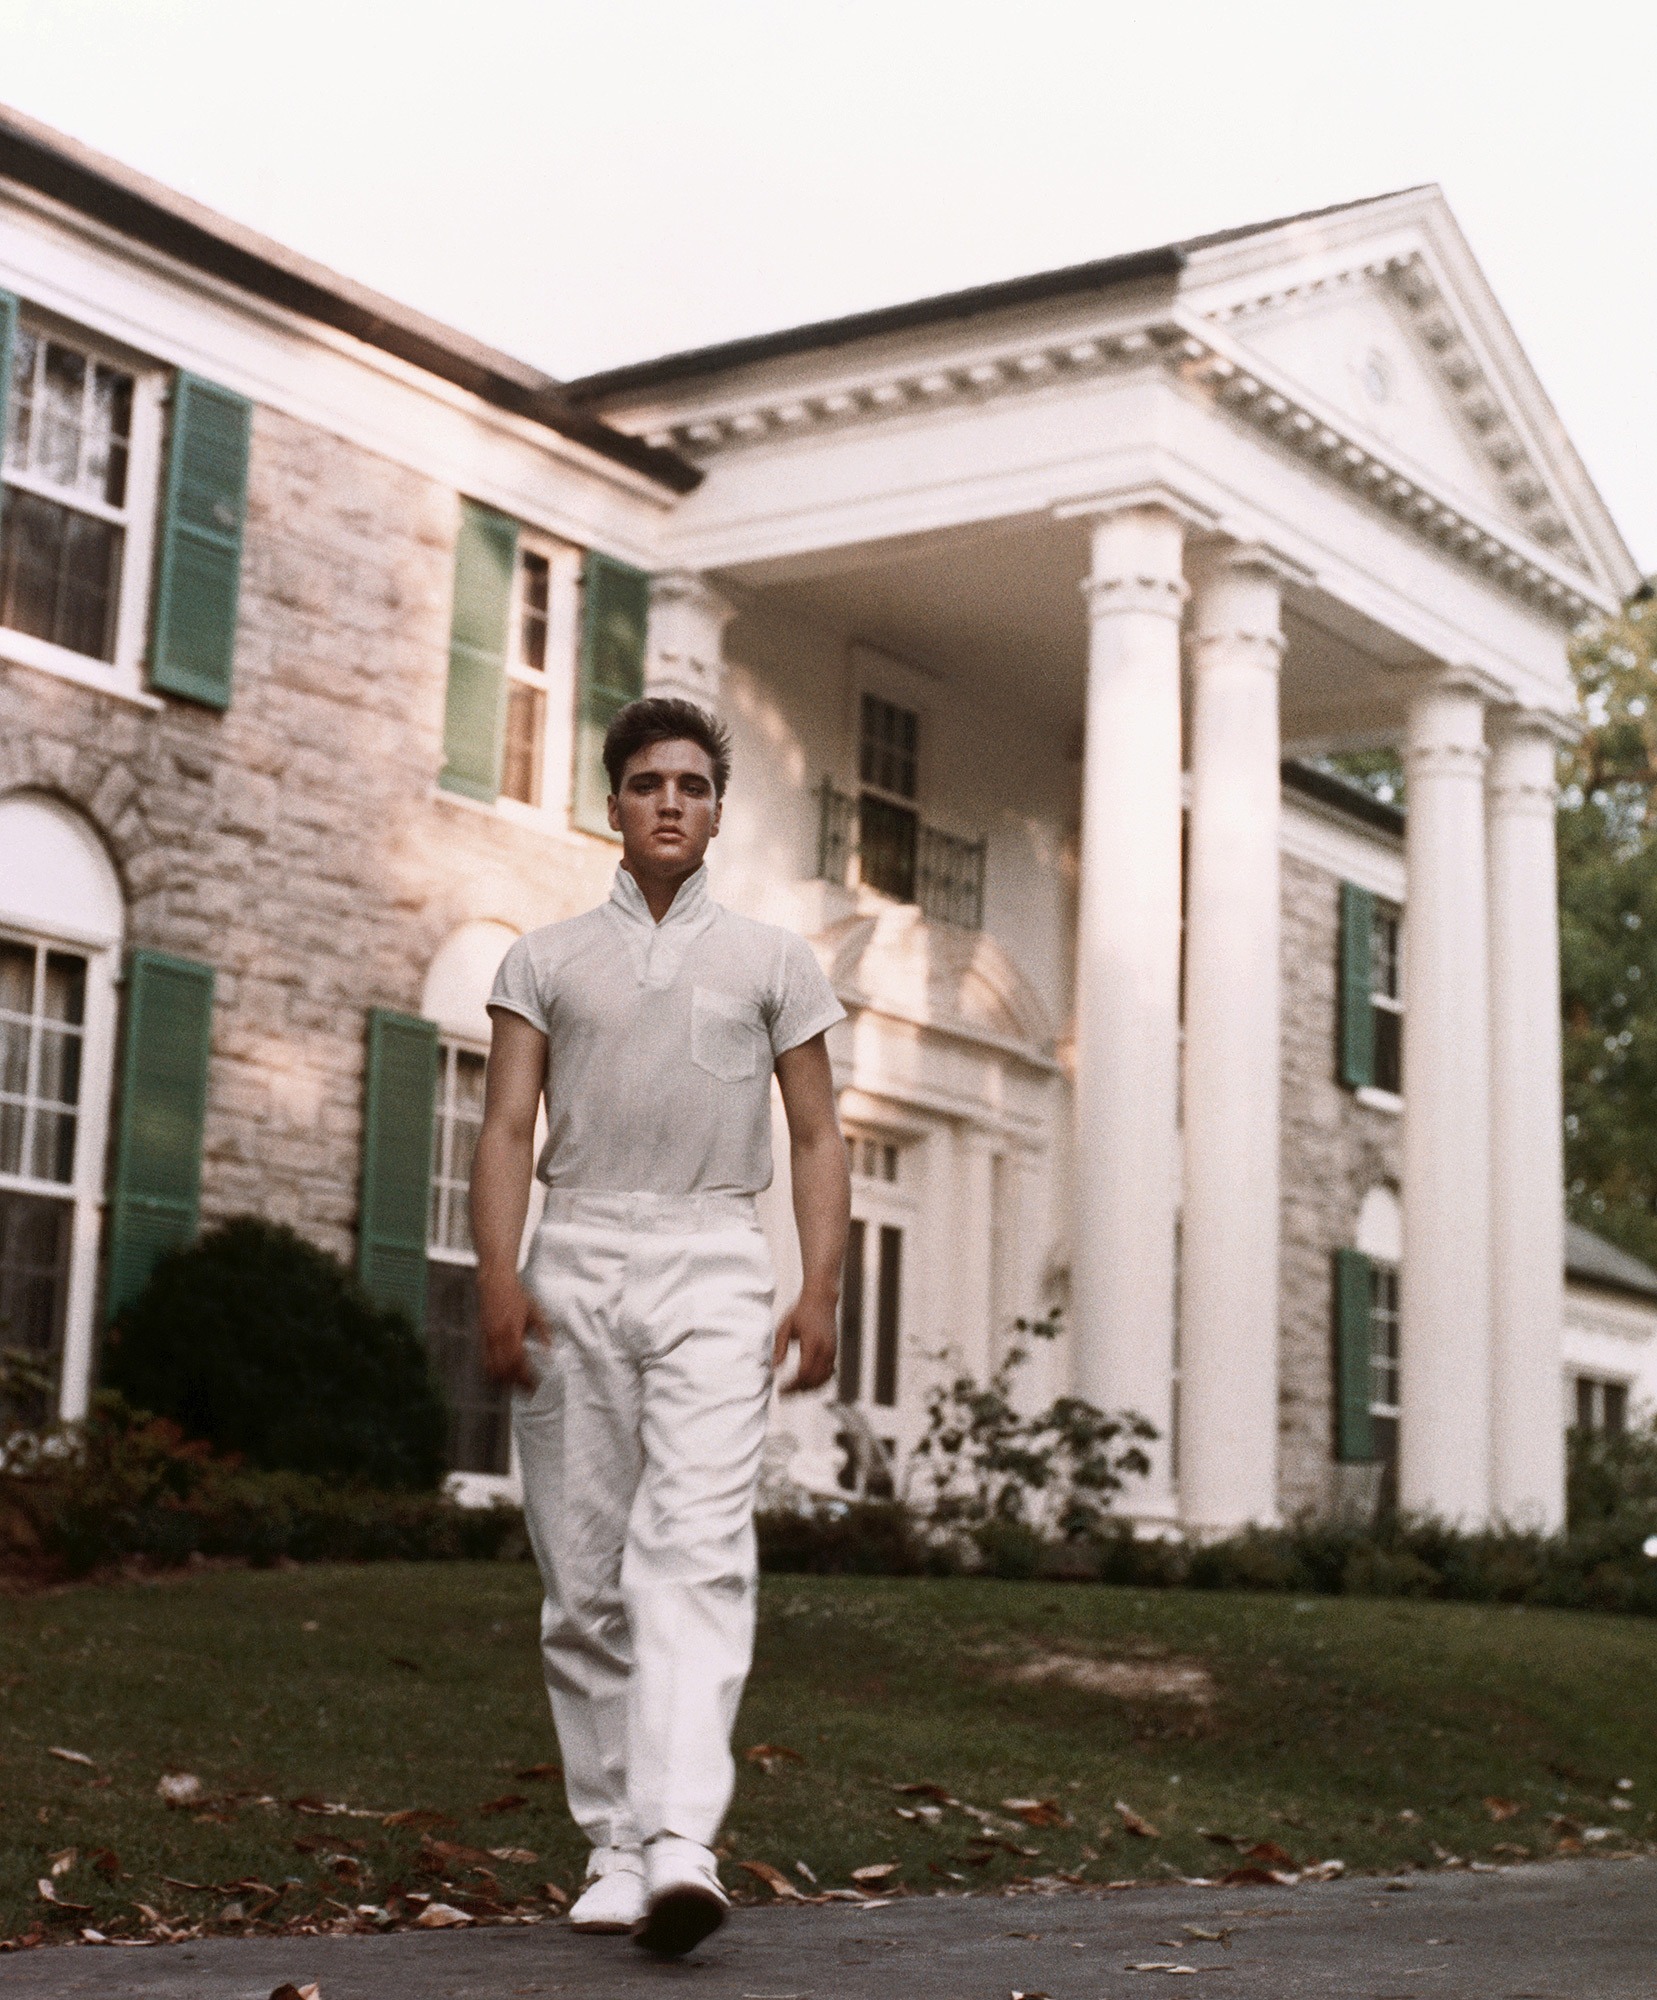 Elvis's Graceland Mansion